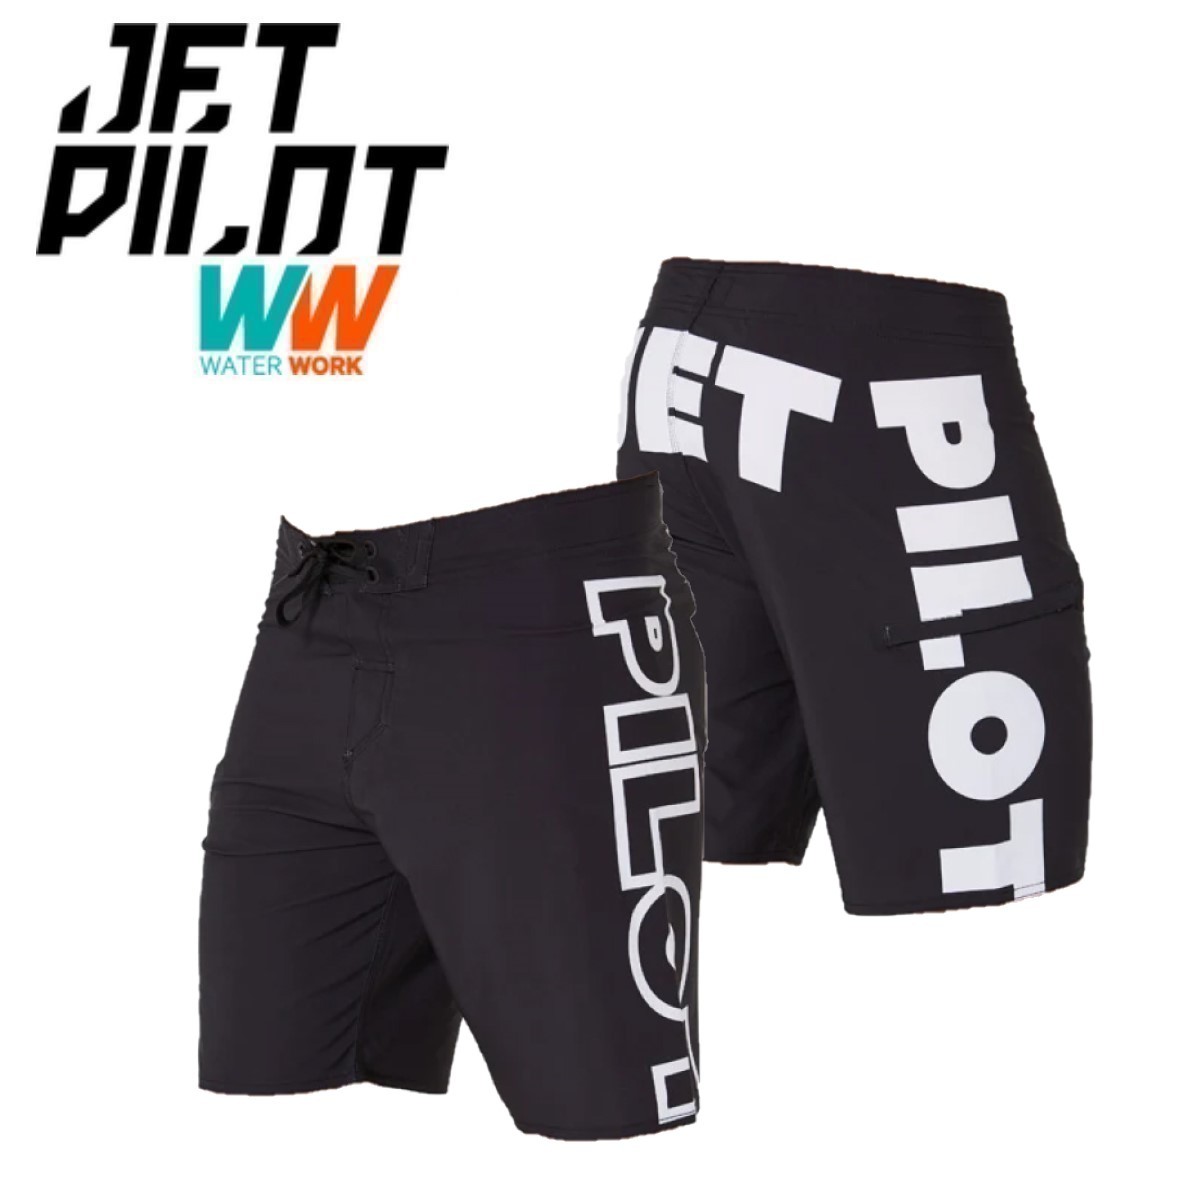  jet Pilot JETPILOT 2024 спортивные брюки бесплатная доставка tibaitido спортивные шорты S23904 черный 32 море хлеб 